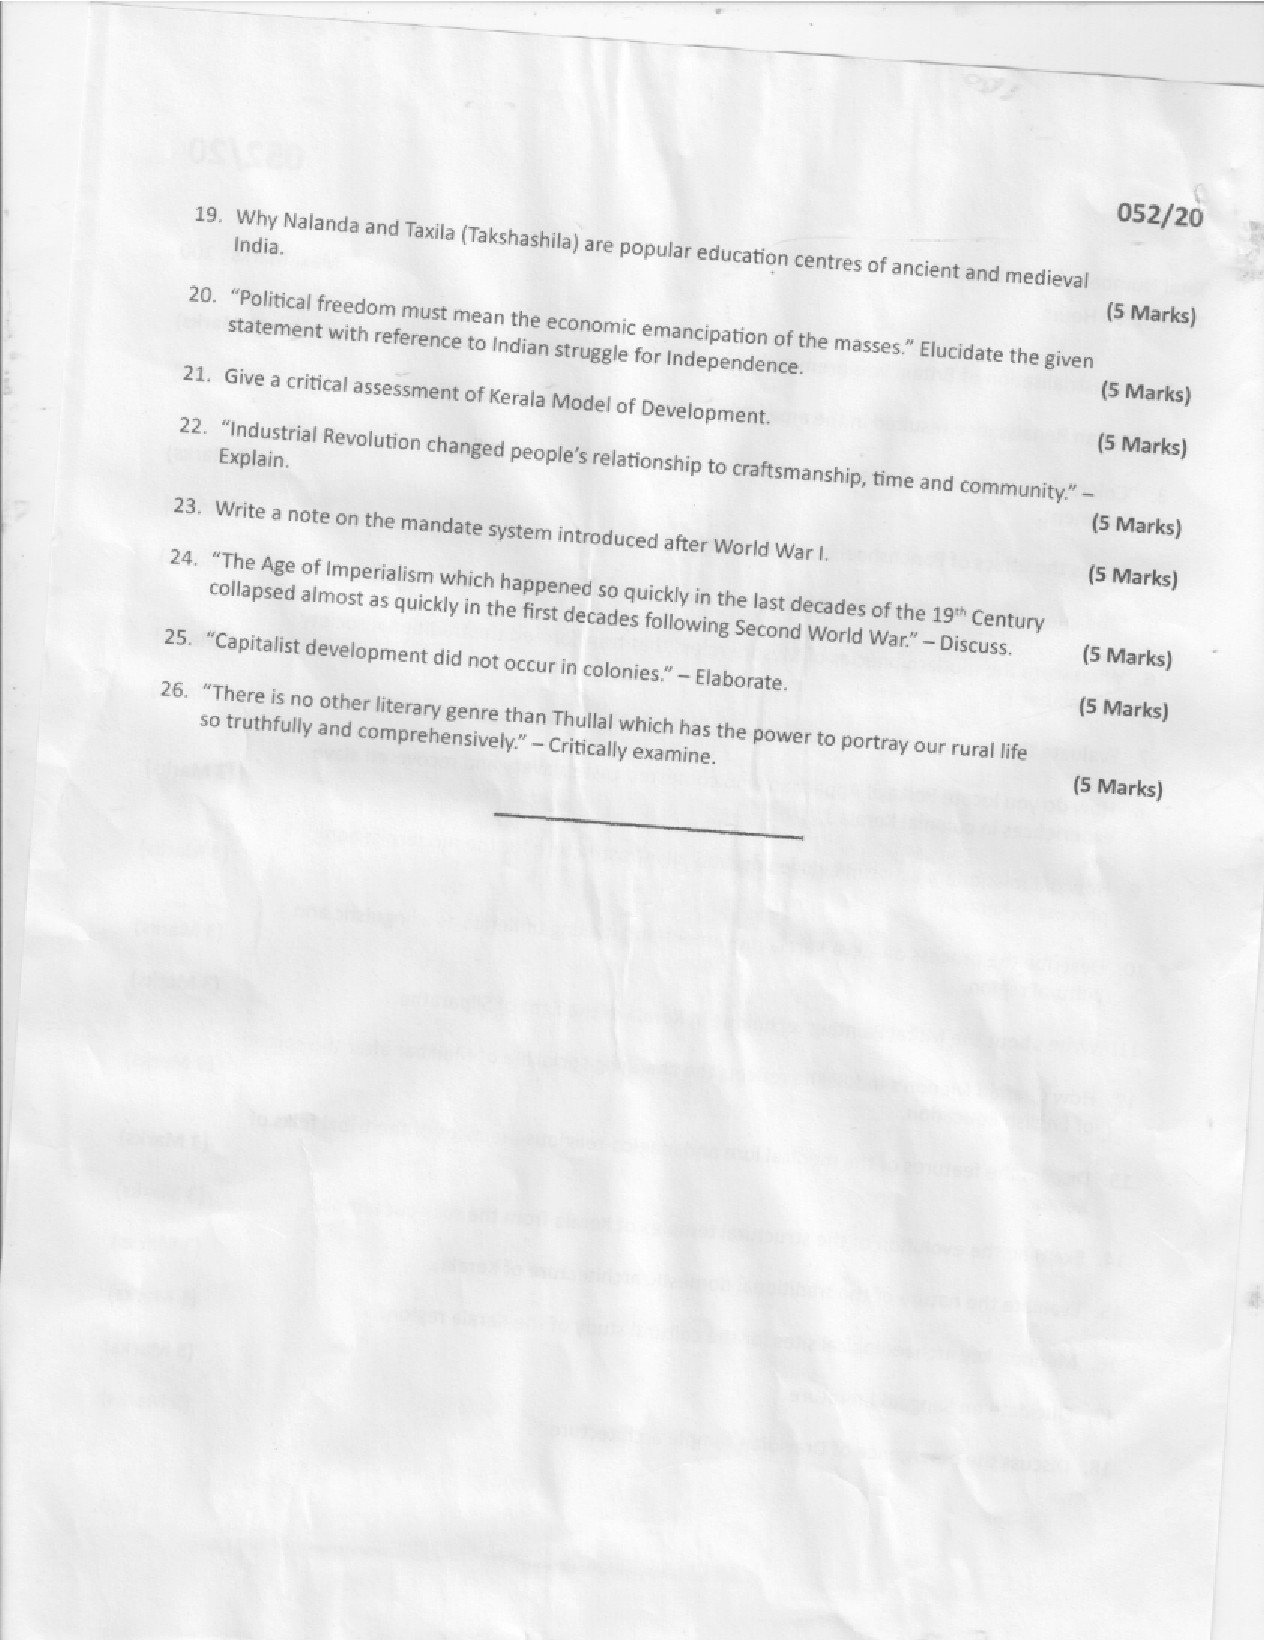 KAS Descriptive Question Paper Main Part I 2020 Code 05220 2